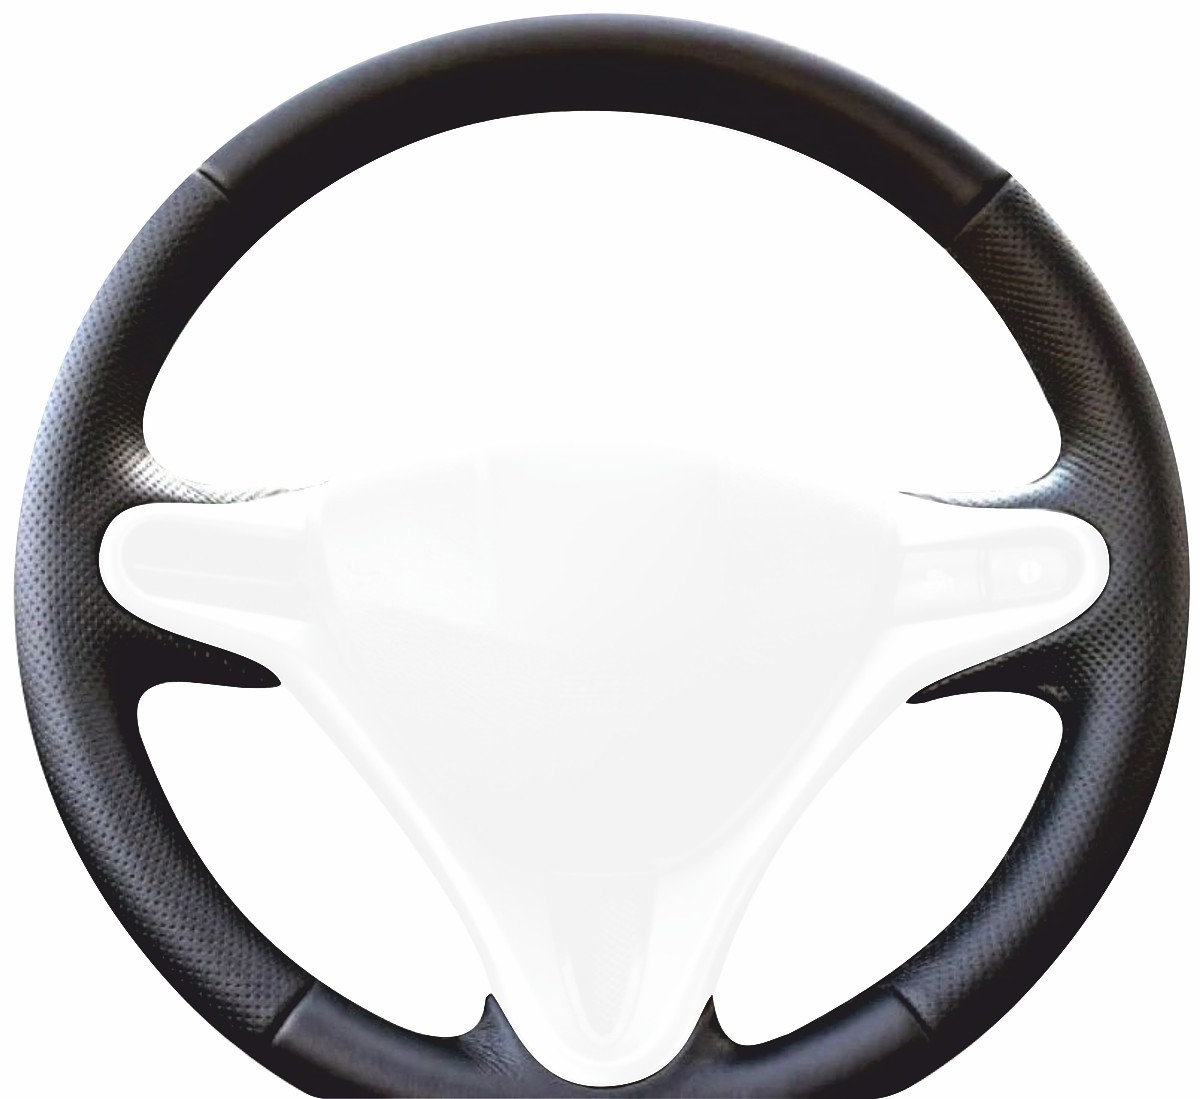 2007-13 Honda Fit steering wheel cover